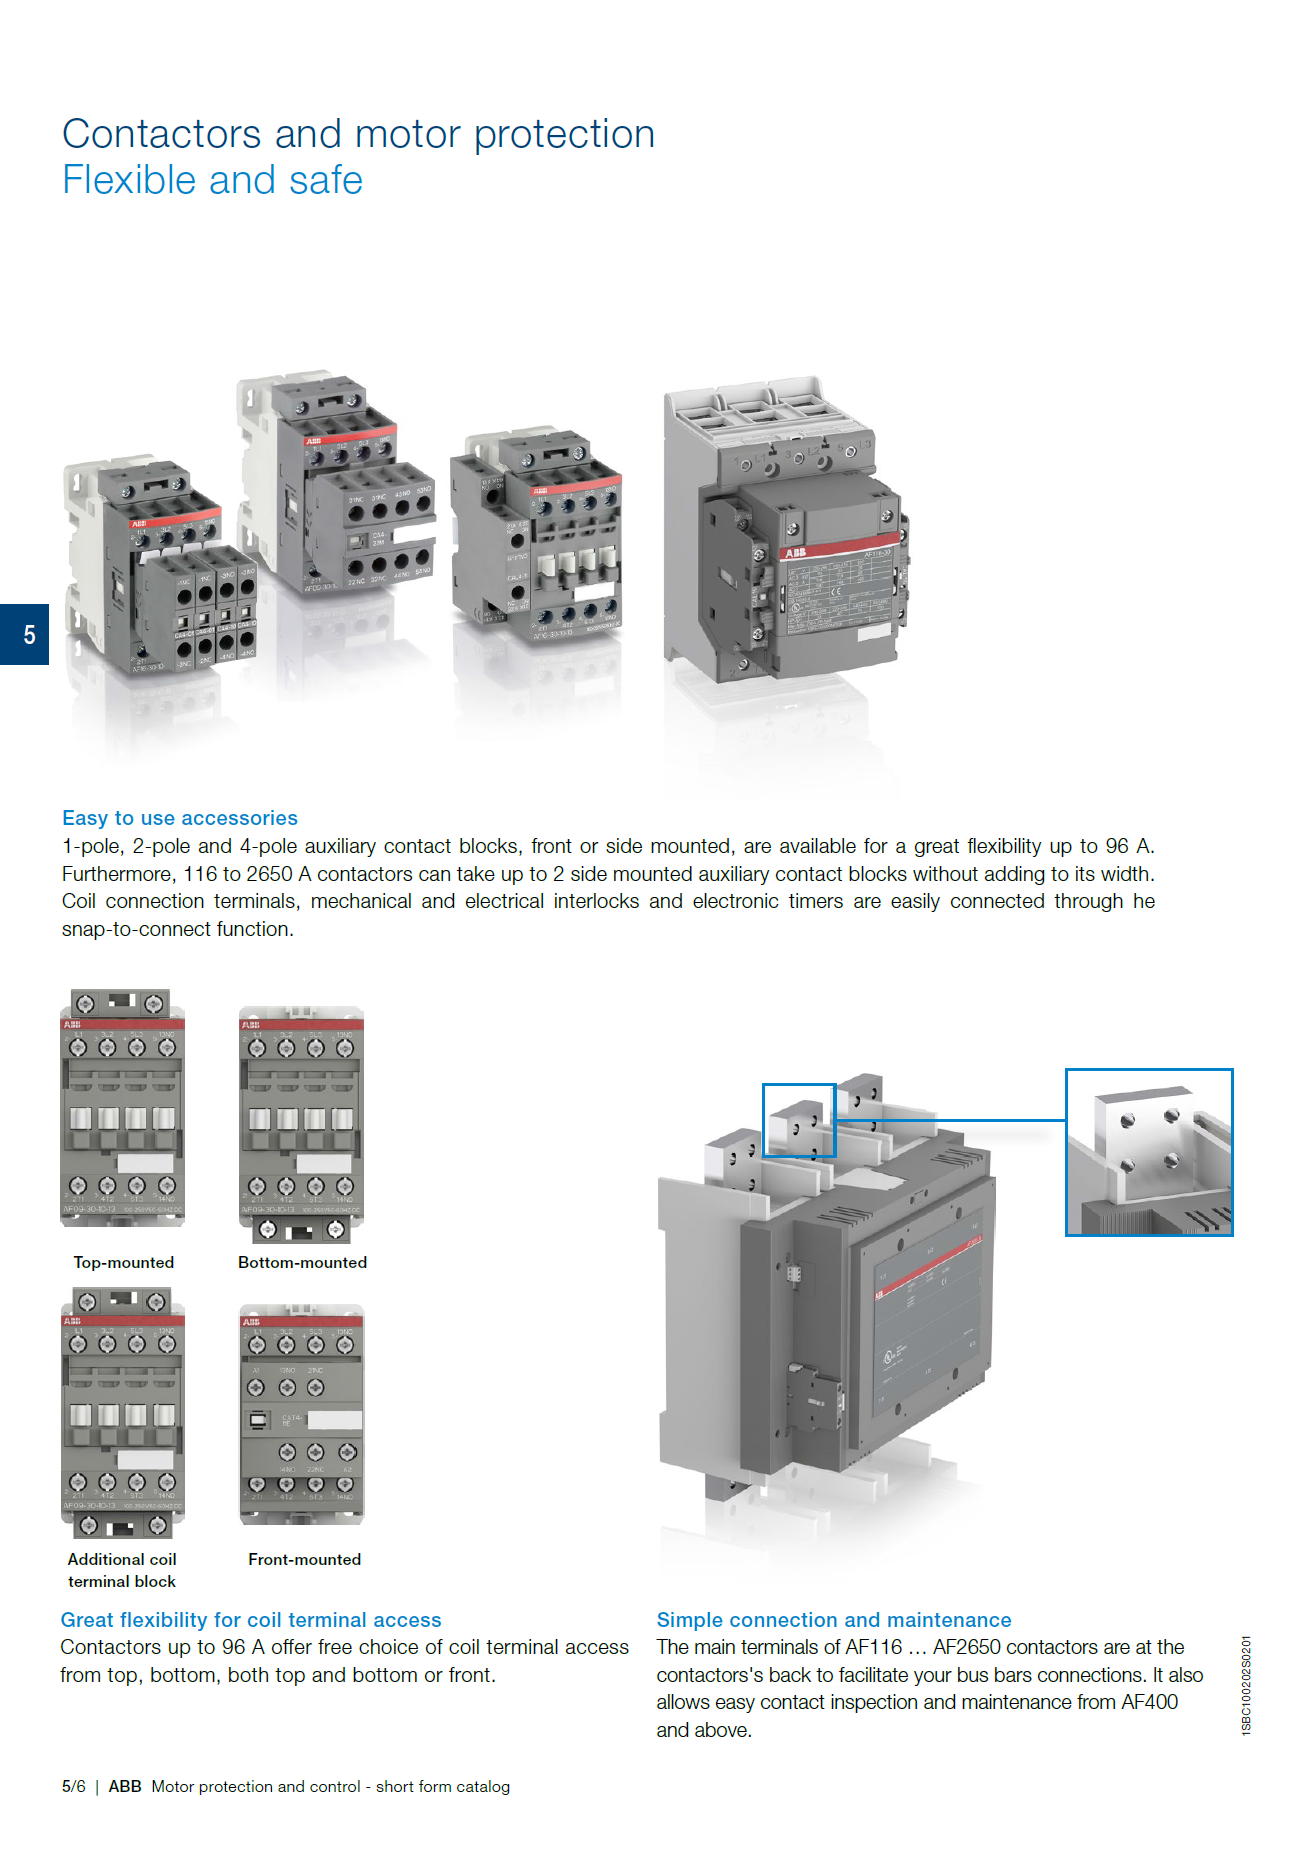 ABB Magnetic Contactors AF Series : AF370-30-11-13